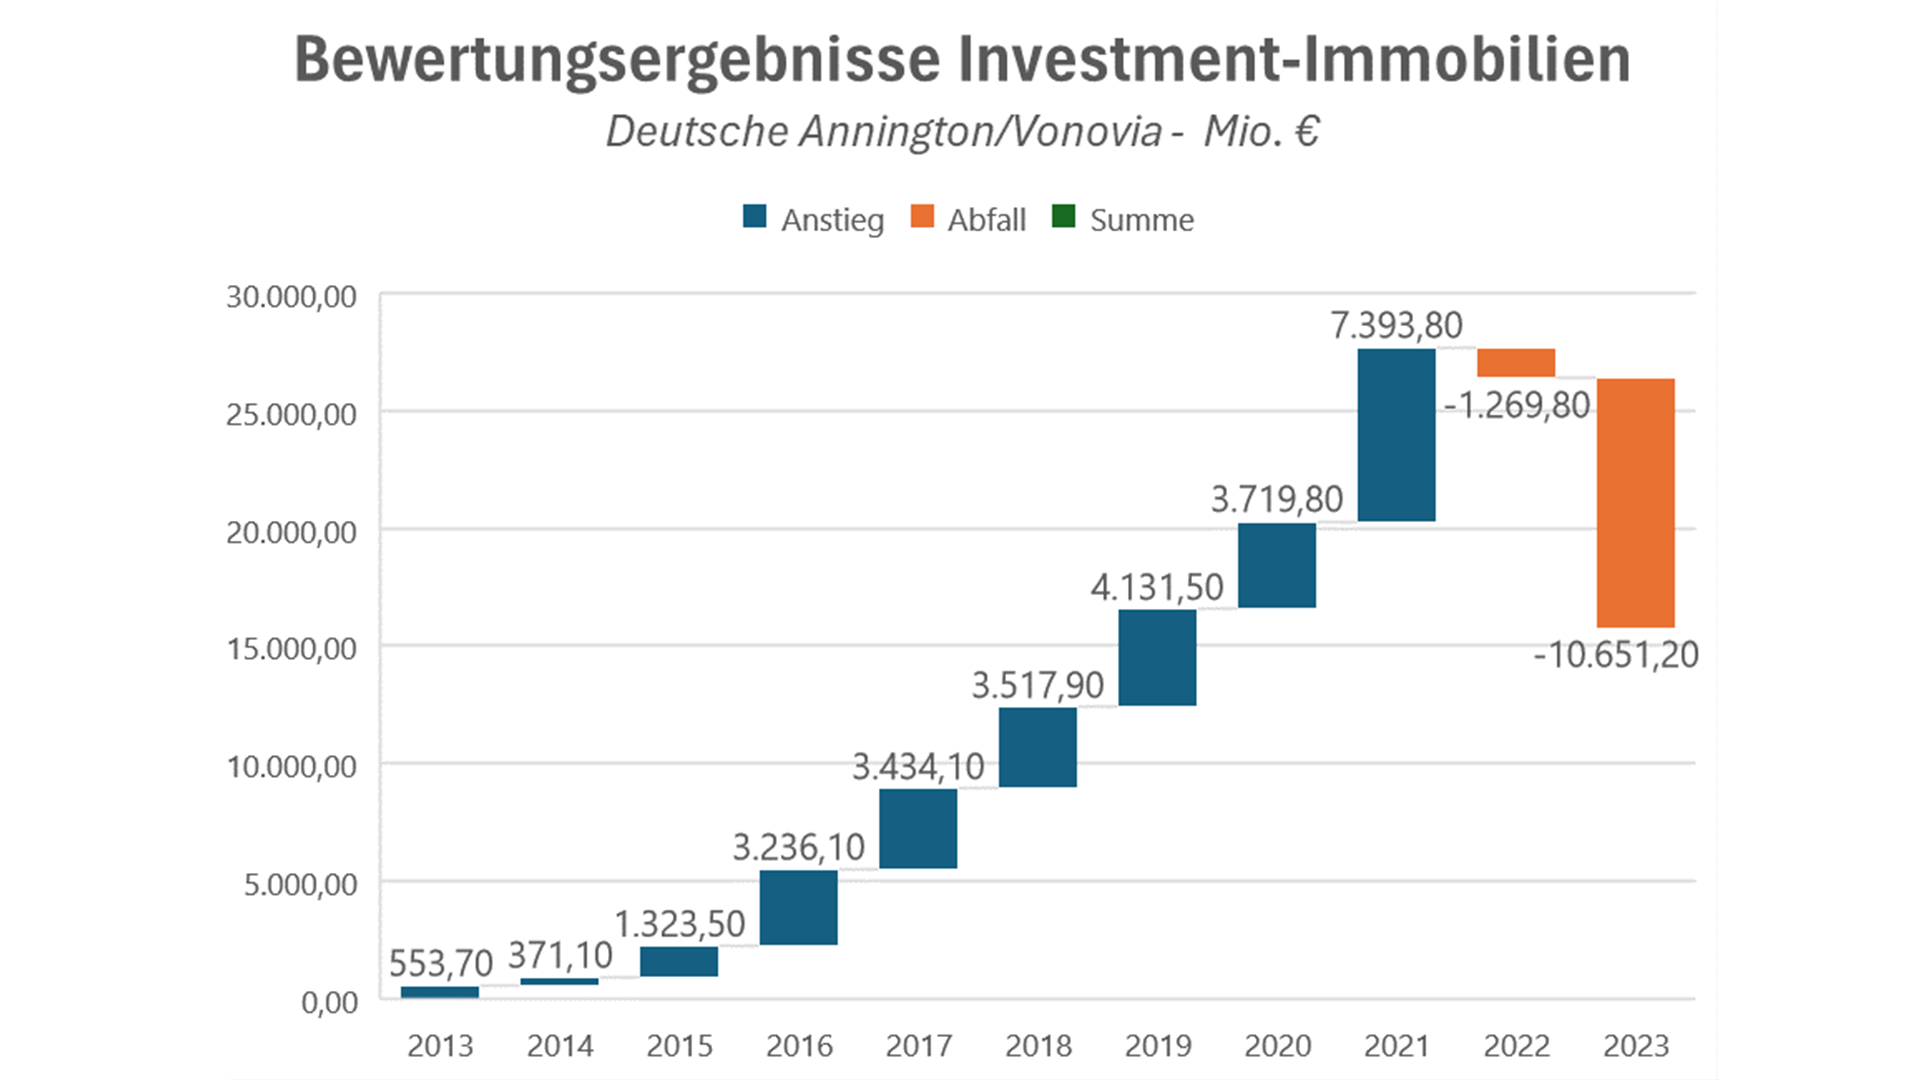 Bewertungsergebnisse Investment-Immobilien (Deutsche Annington/Vonovia - in Millionen Euro)